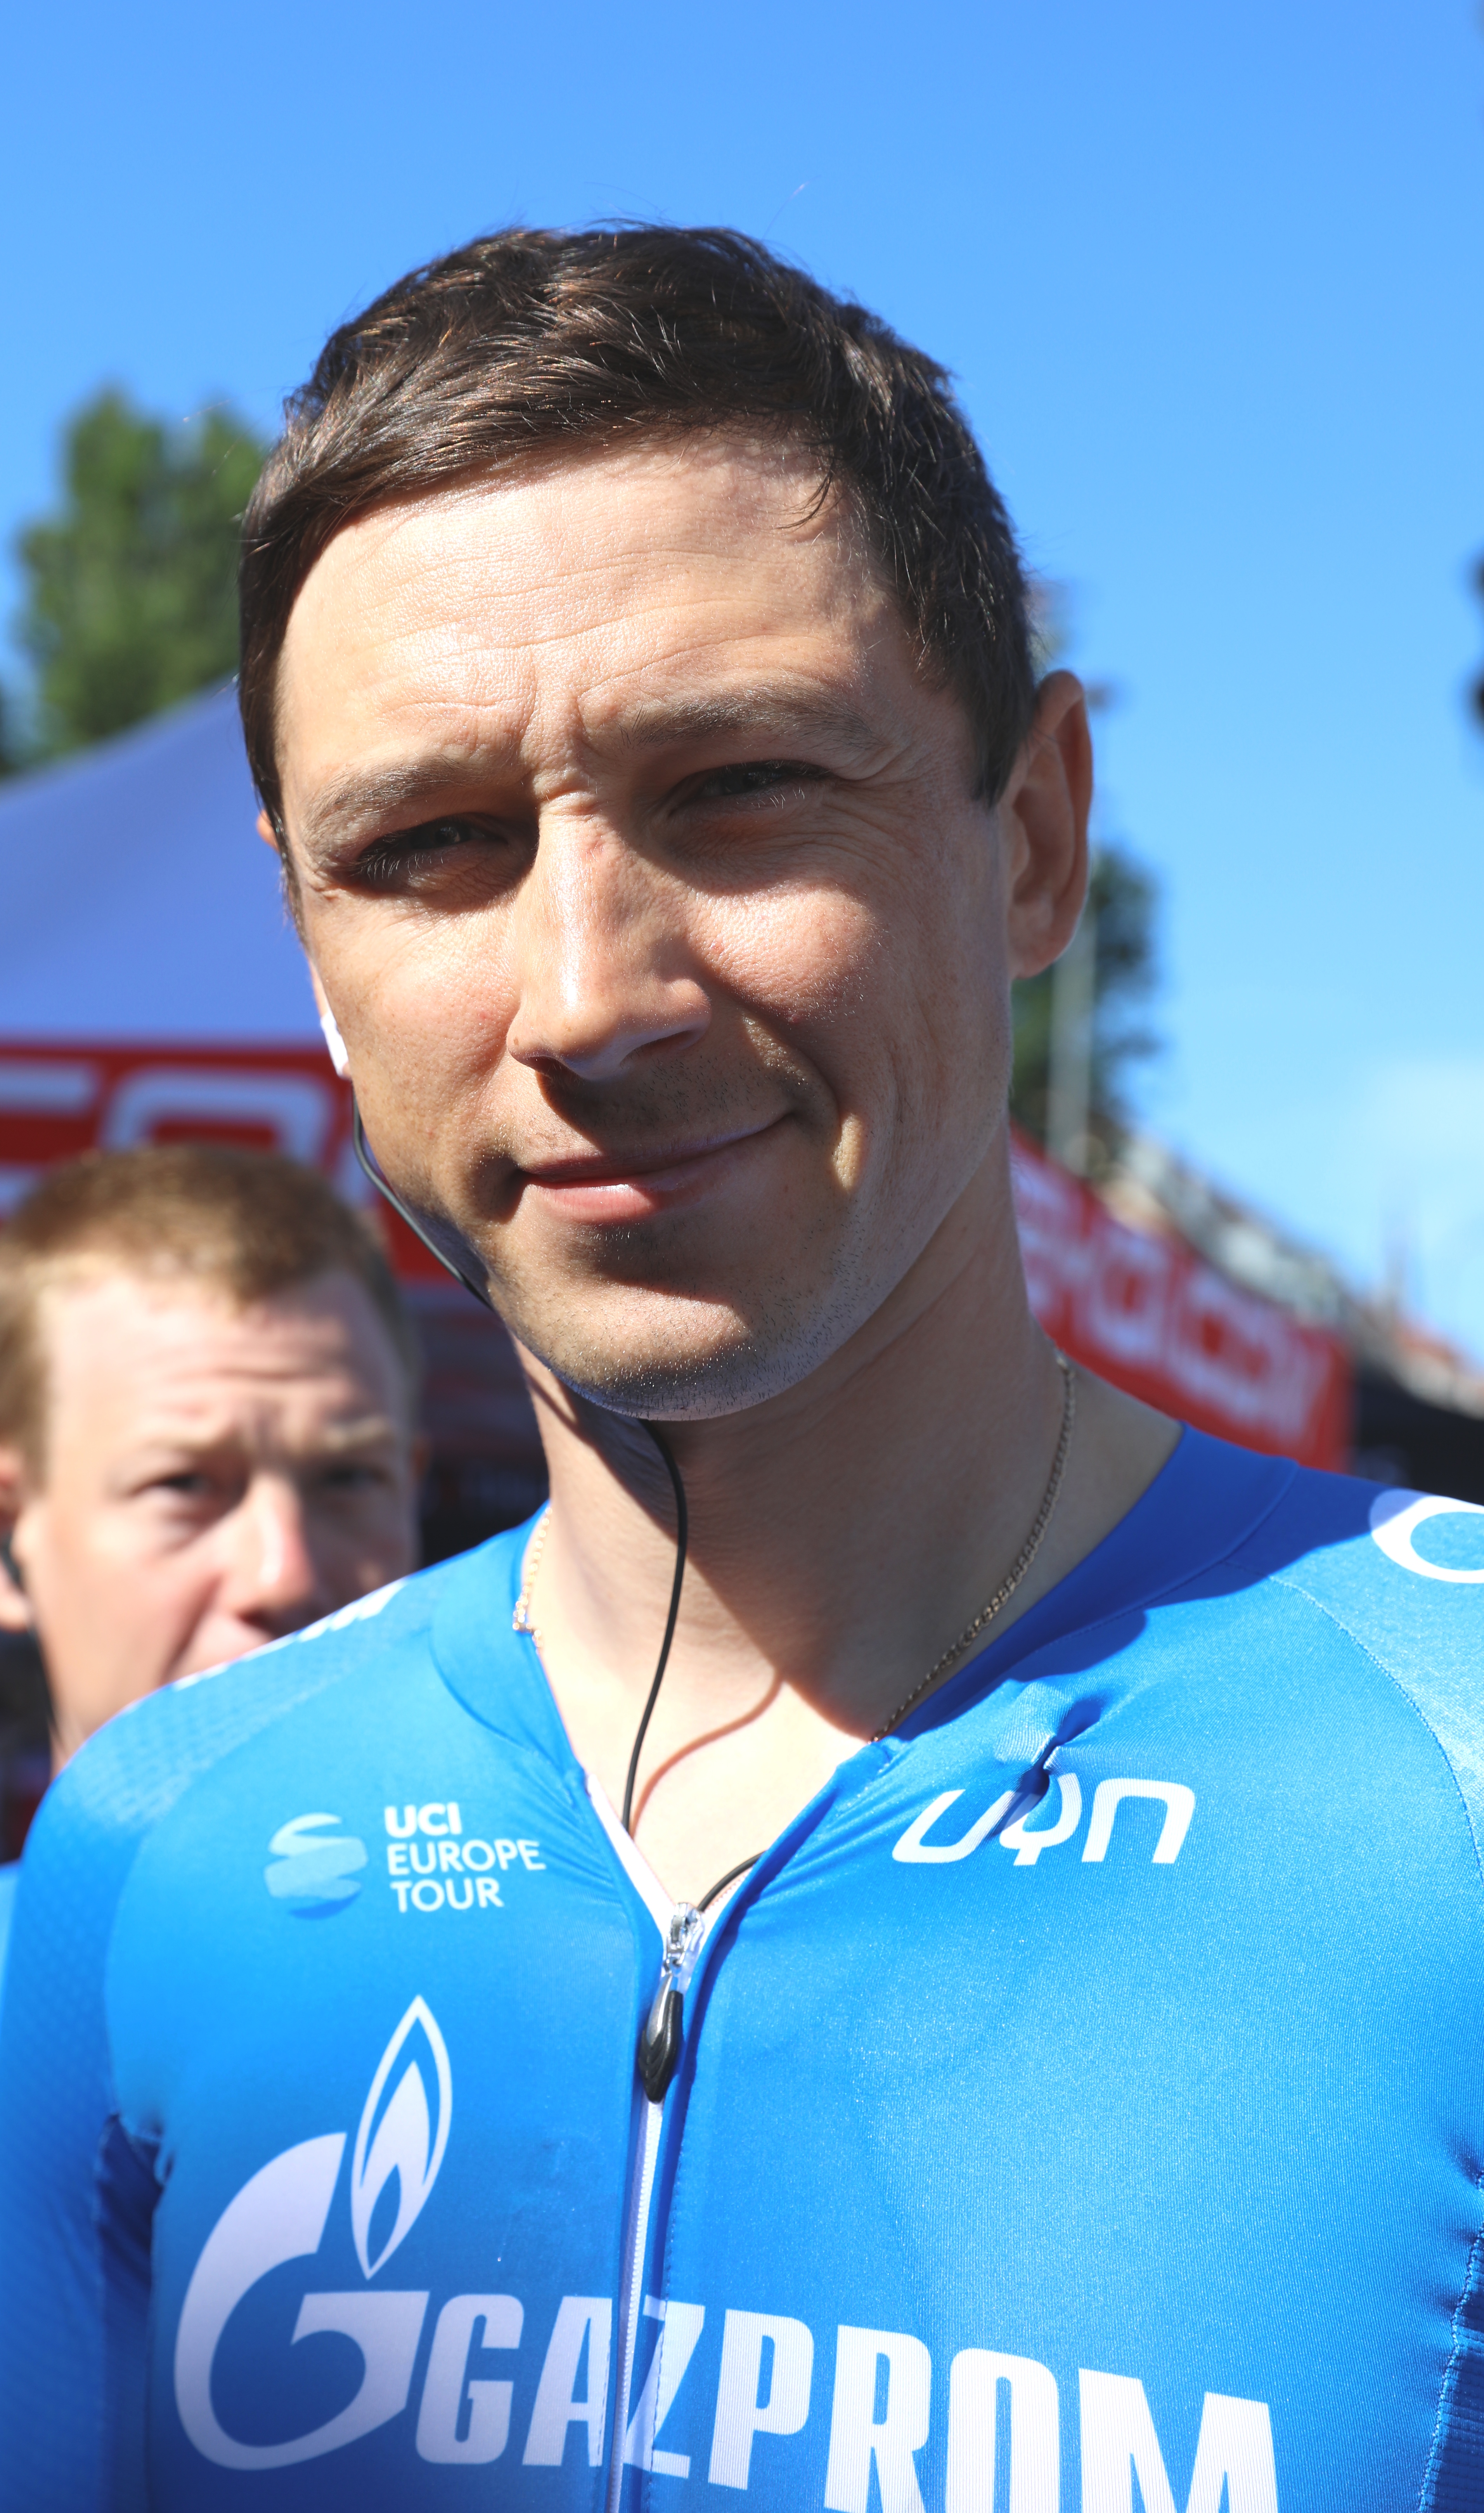 Alexander Nikolajewitsch Porsew ist ein russischer Straßenradrennfahrer. 